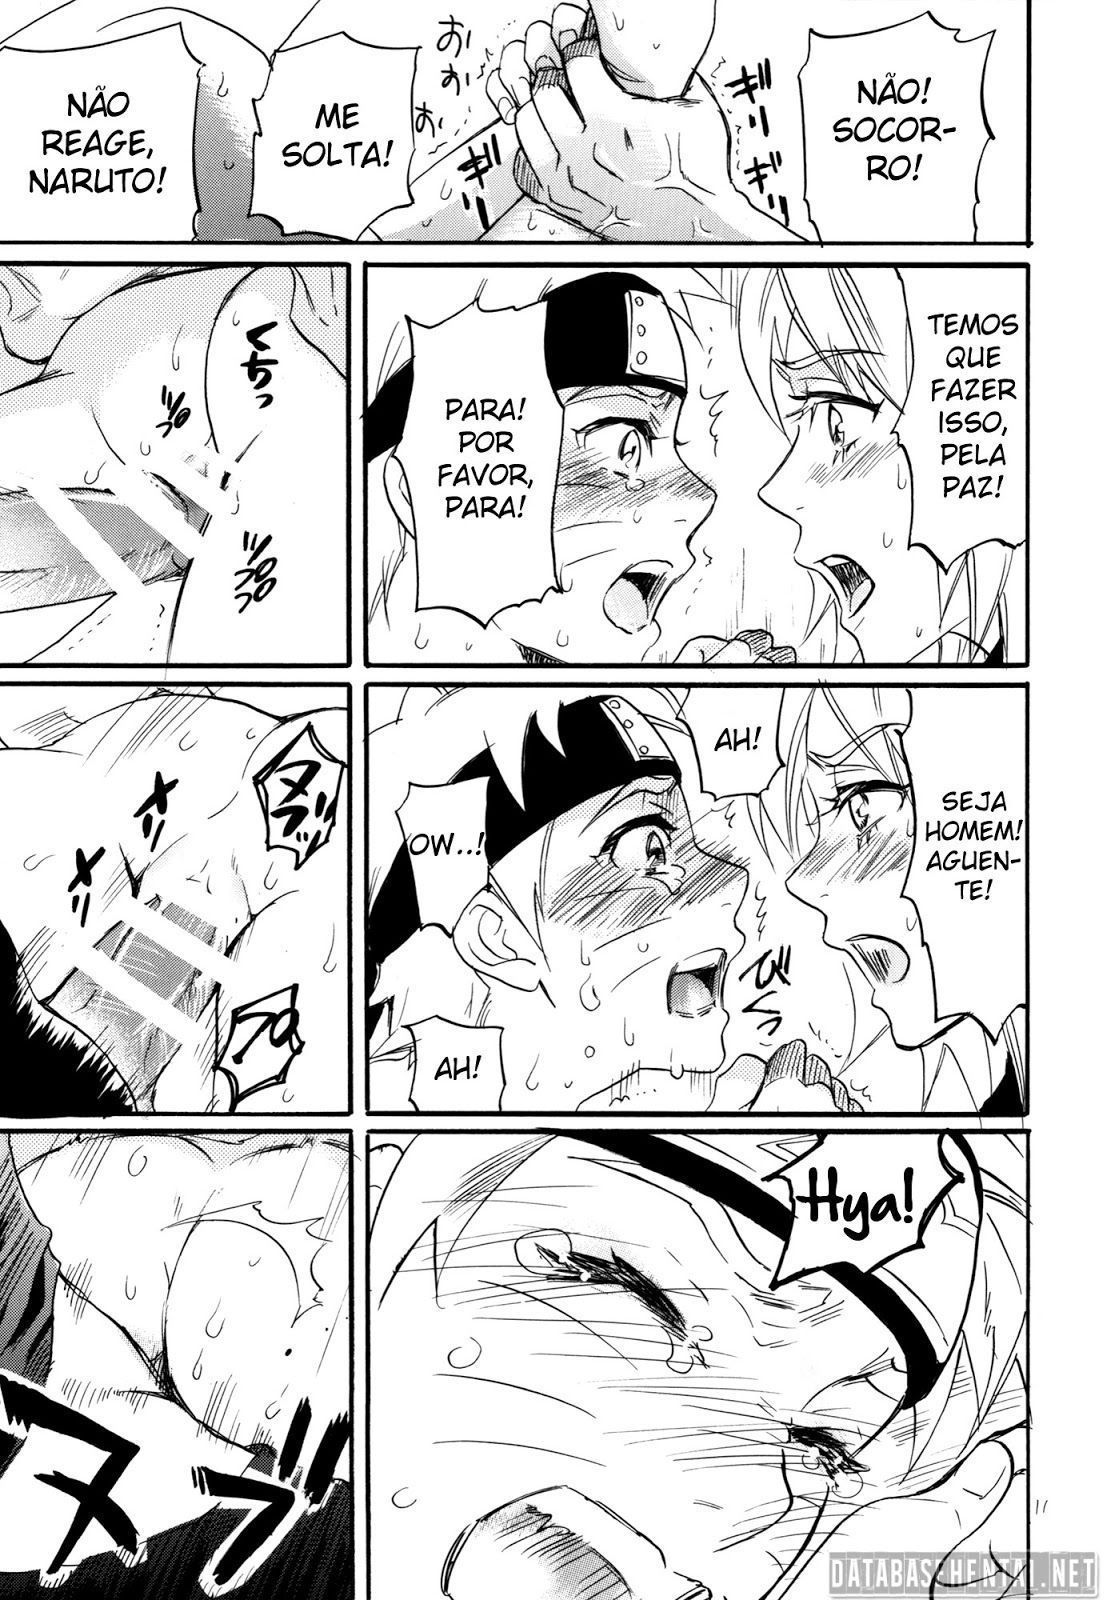 Sasuke e naruto mostrando que são bons amantes quando estão juntinhos